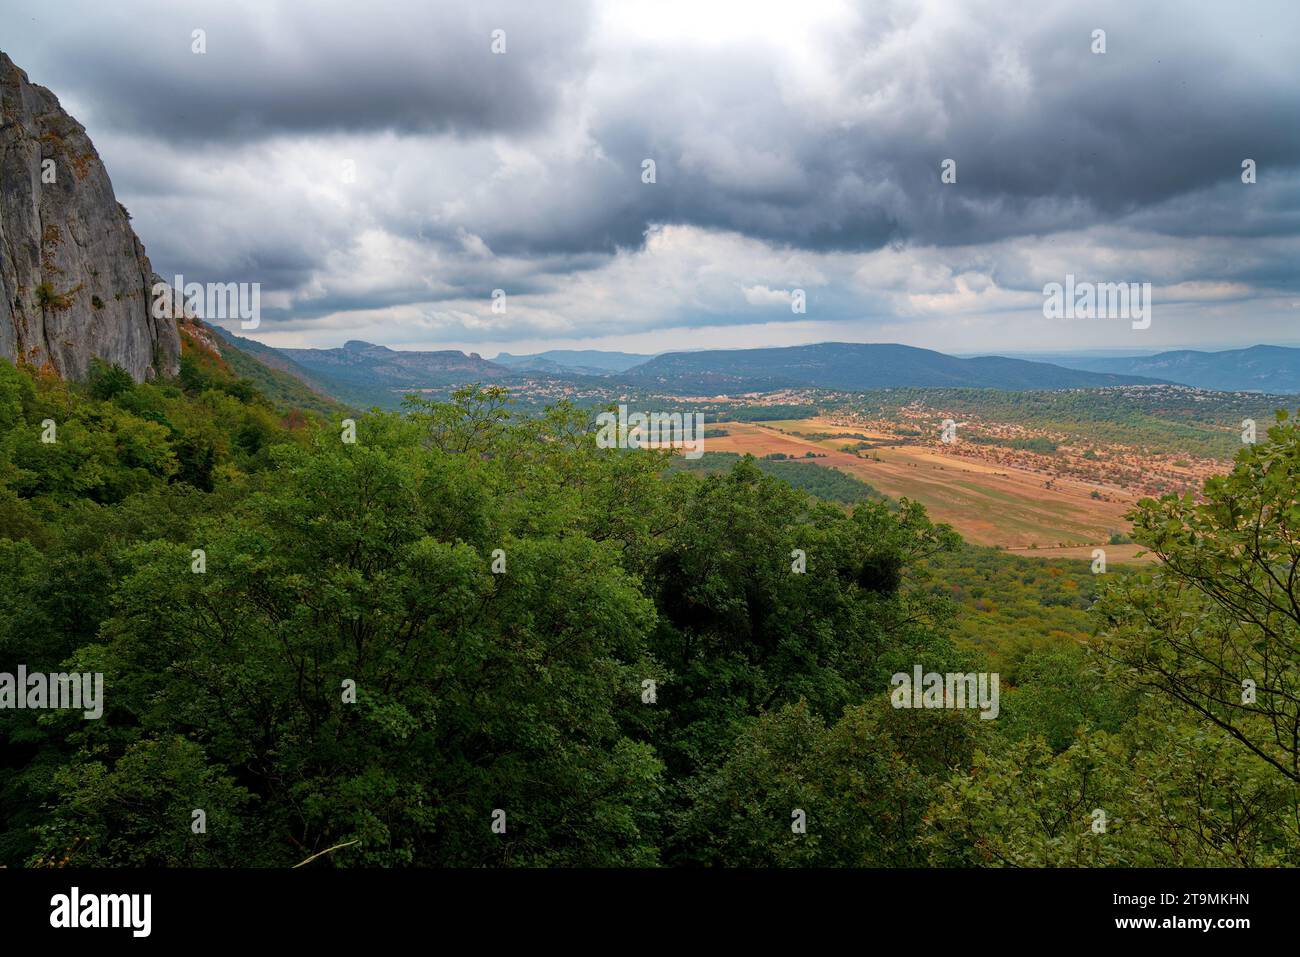 paysage de la sainte baume avec vue sur la plaine du plau d'aups et sur le sanctuaire de sainte marie madeleine Stockfoto